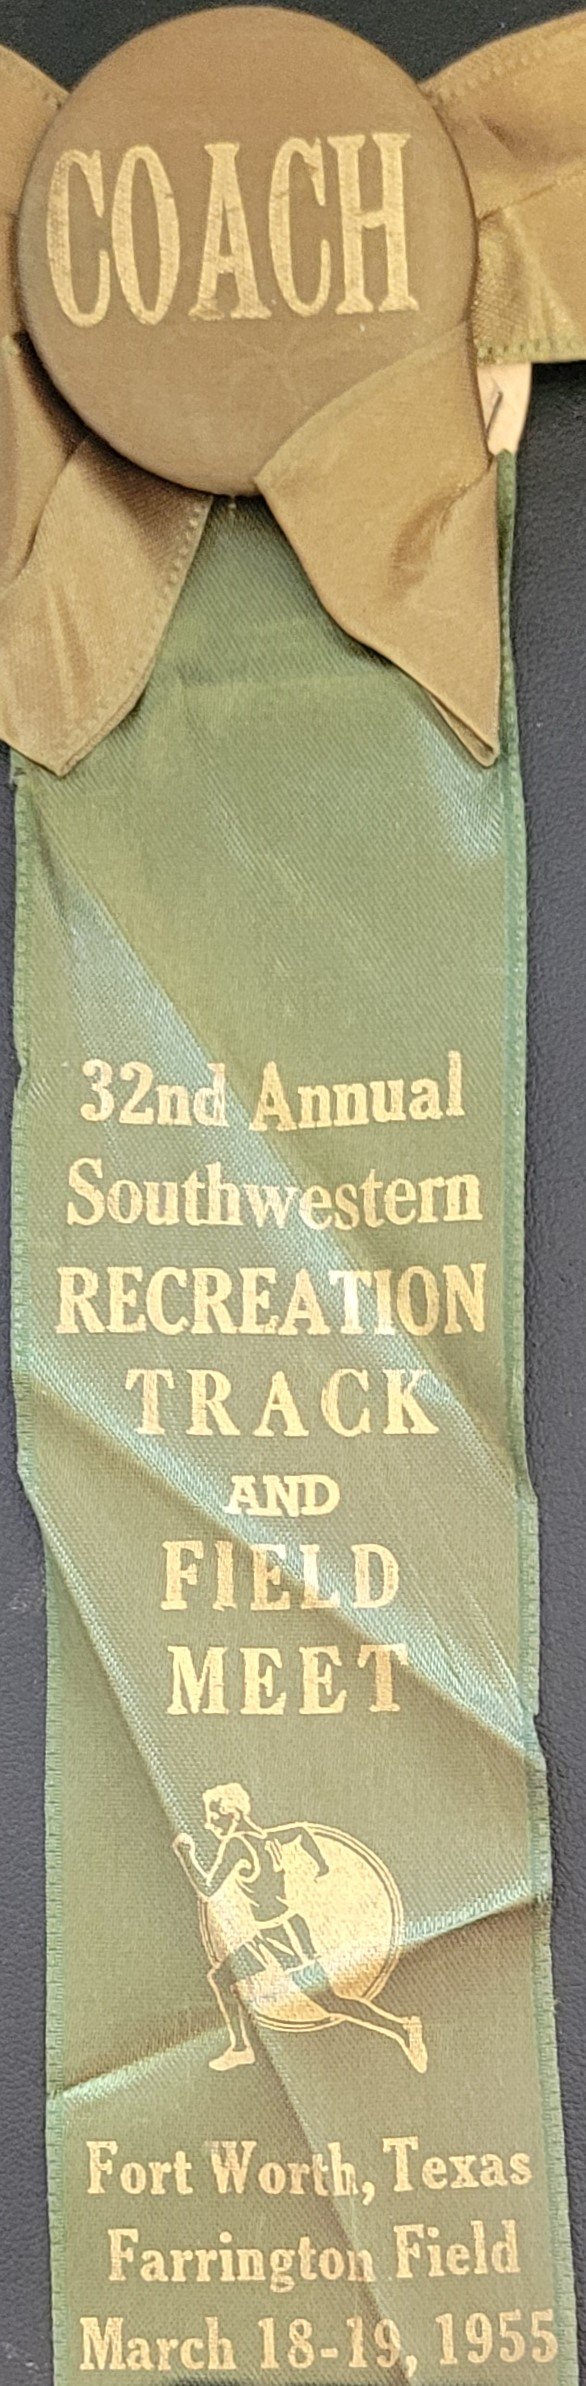 1955 Coach ribbon